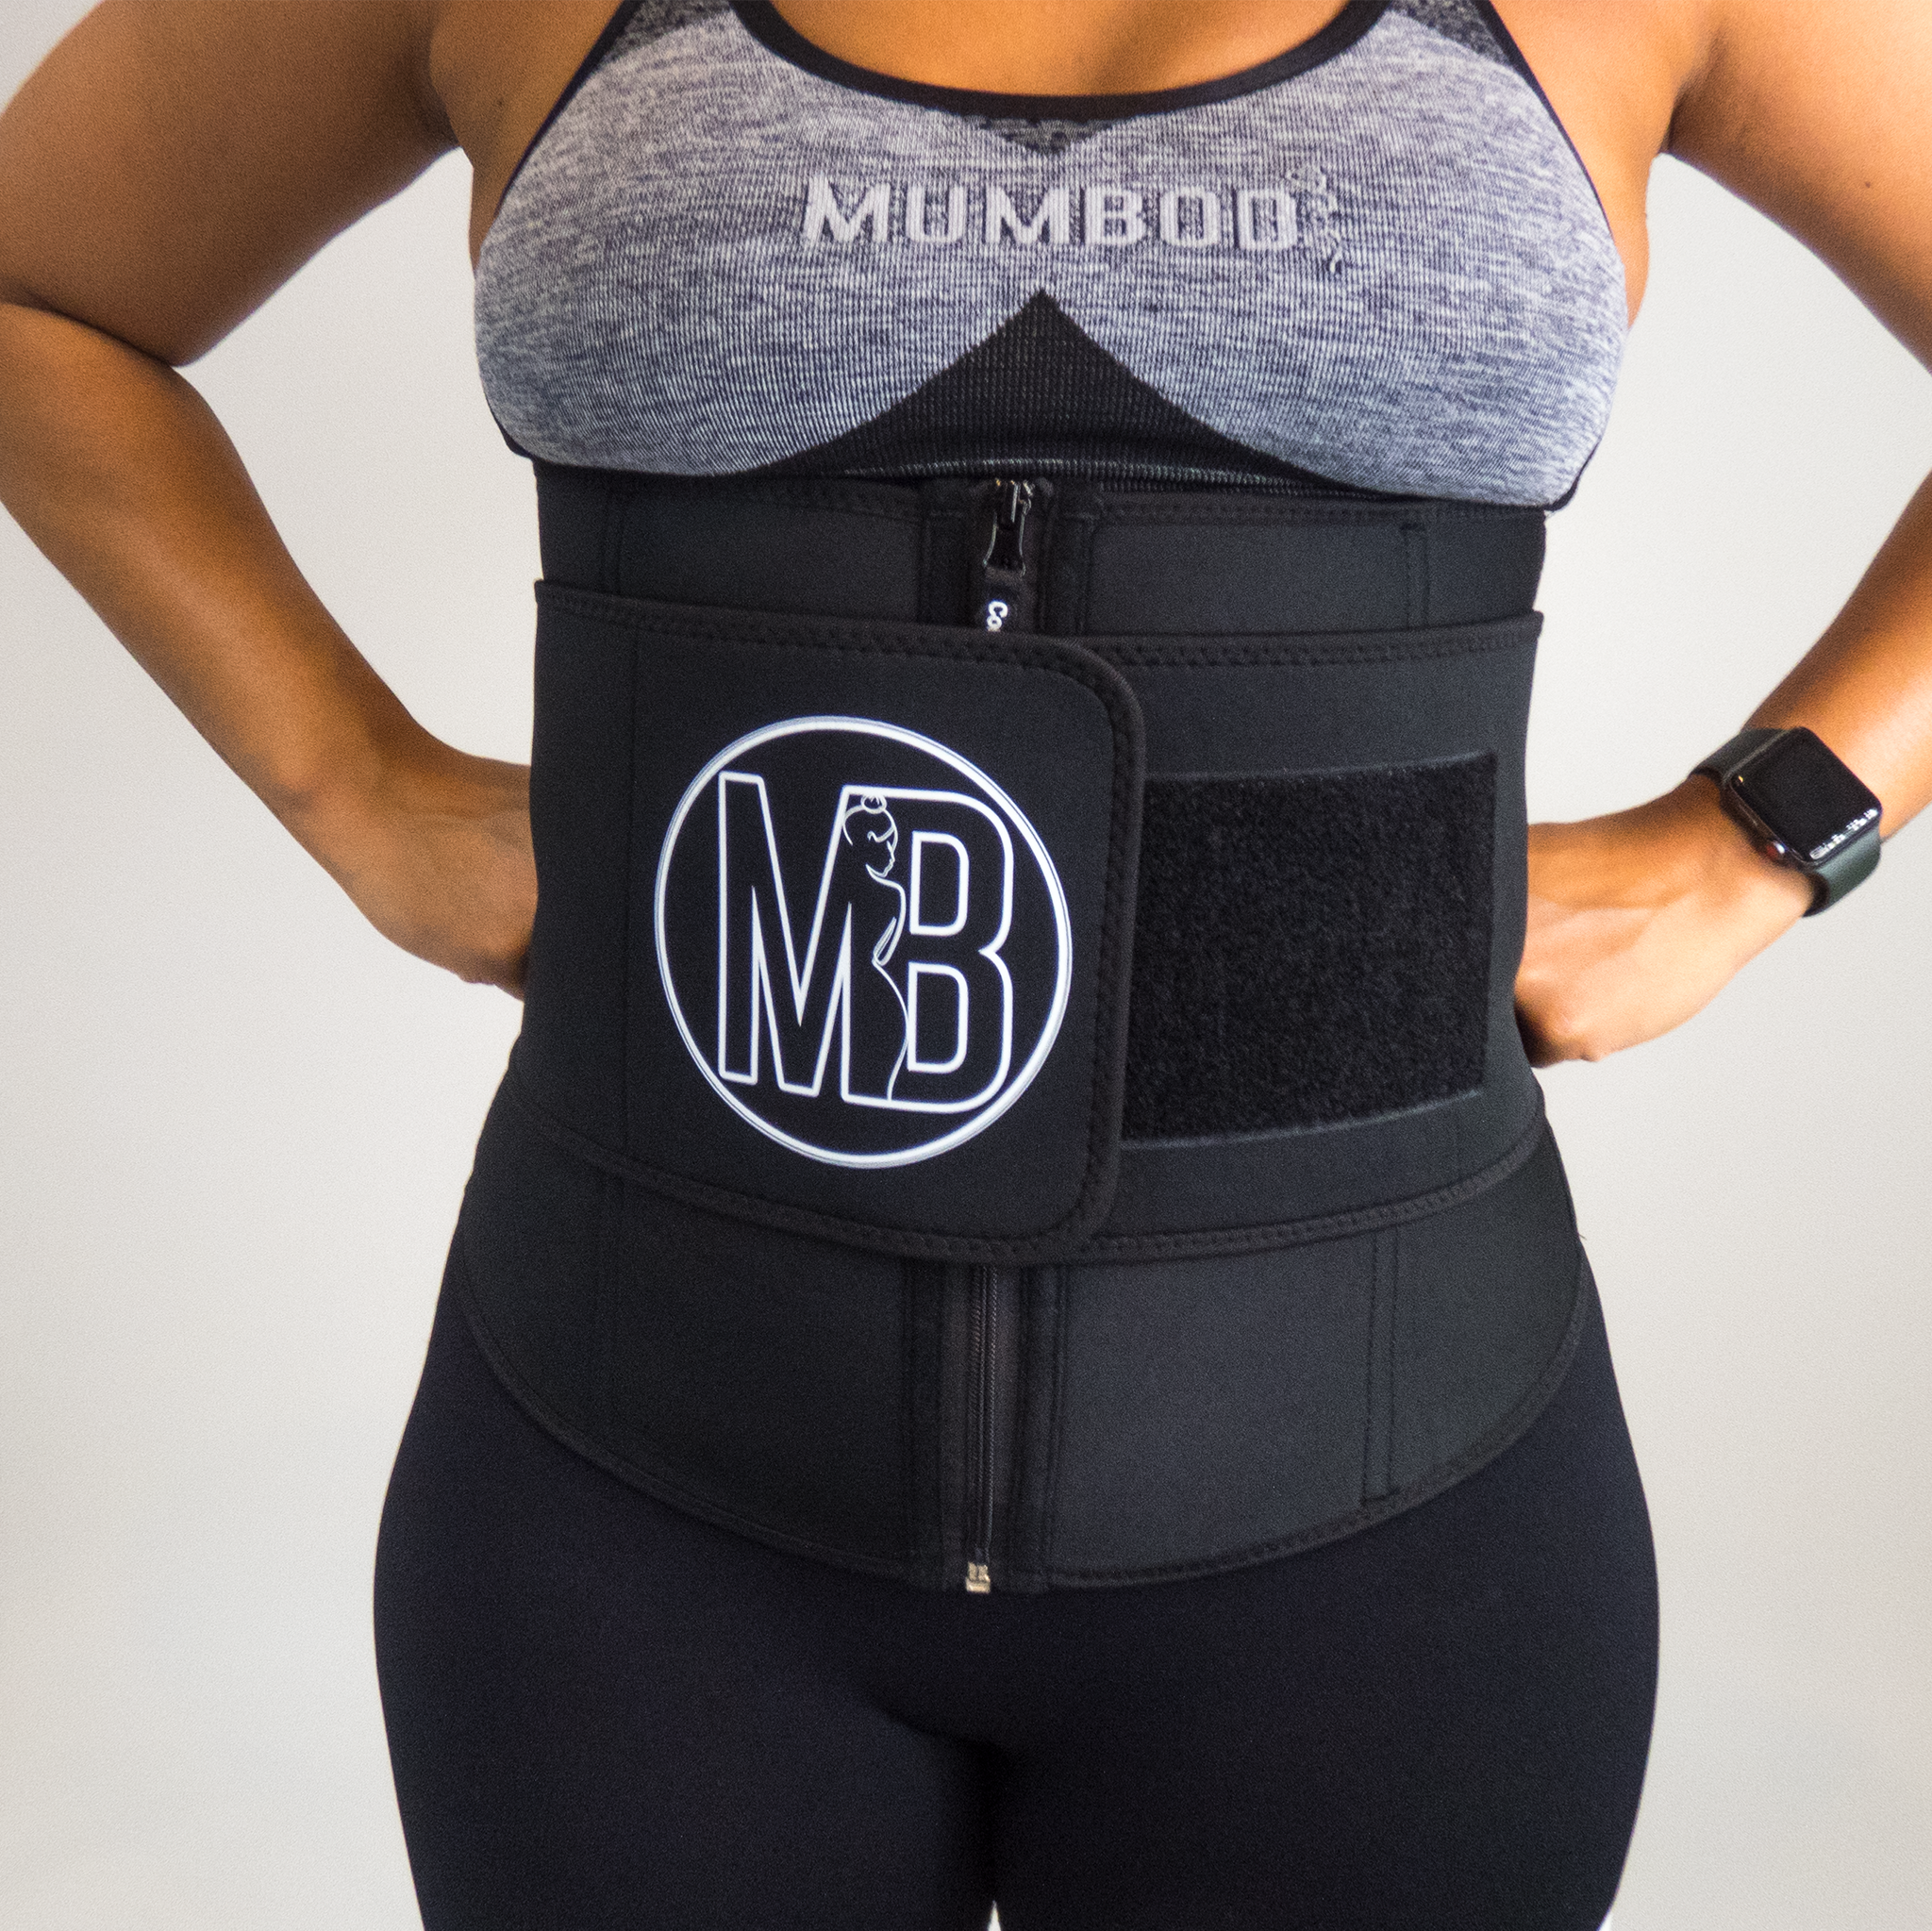 Mumbod 'Sweat More' Belt – MUMBOD